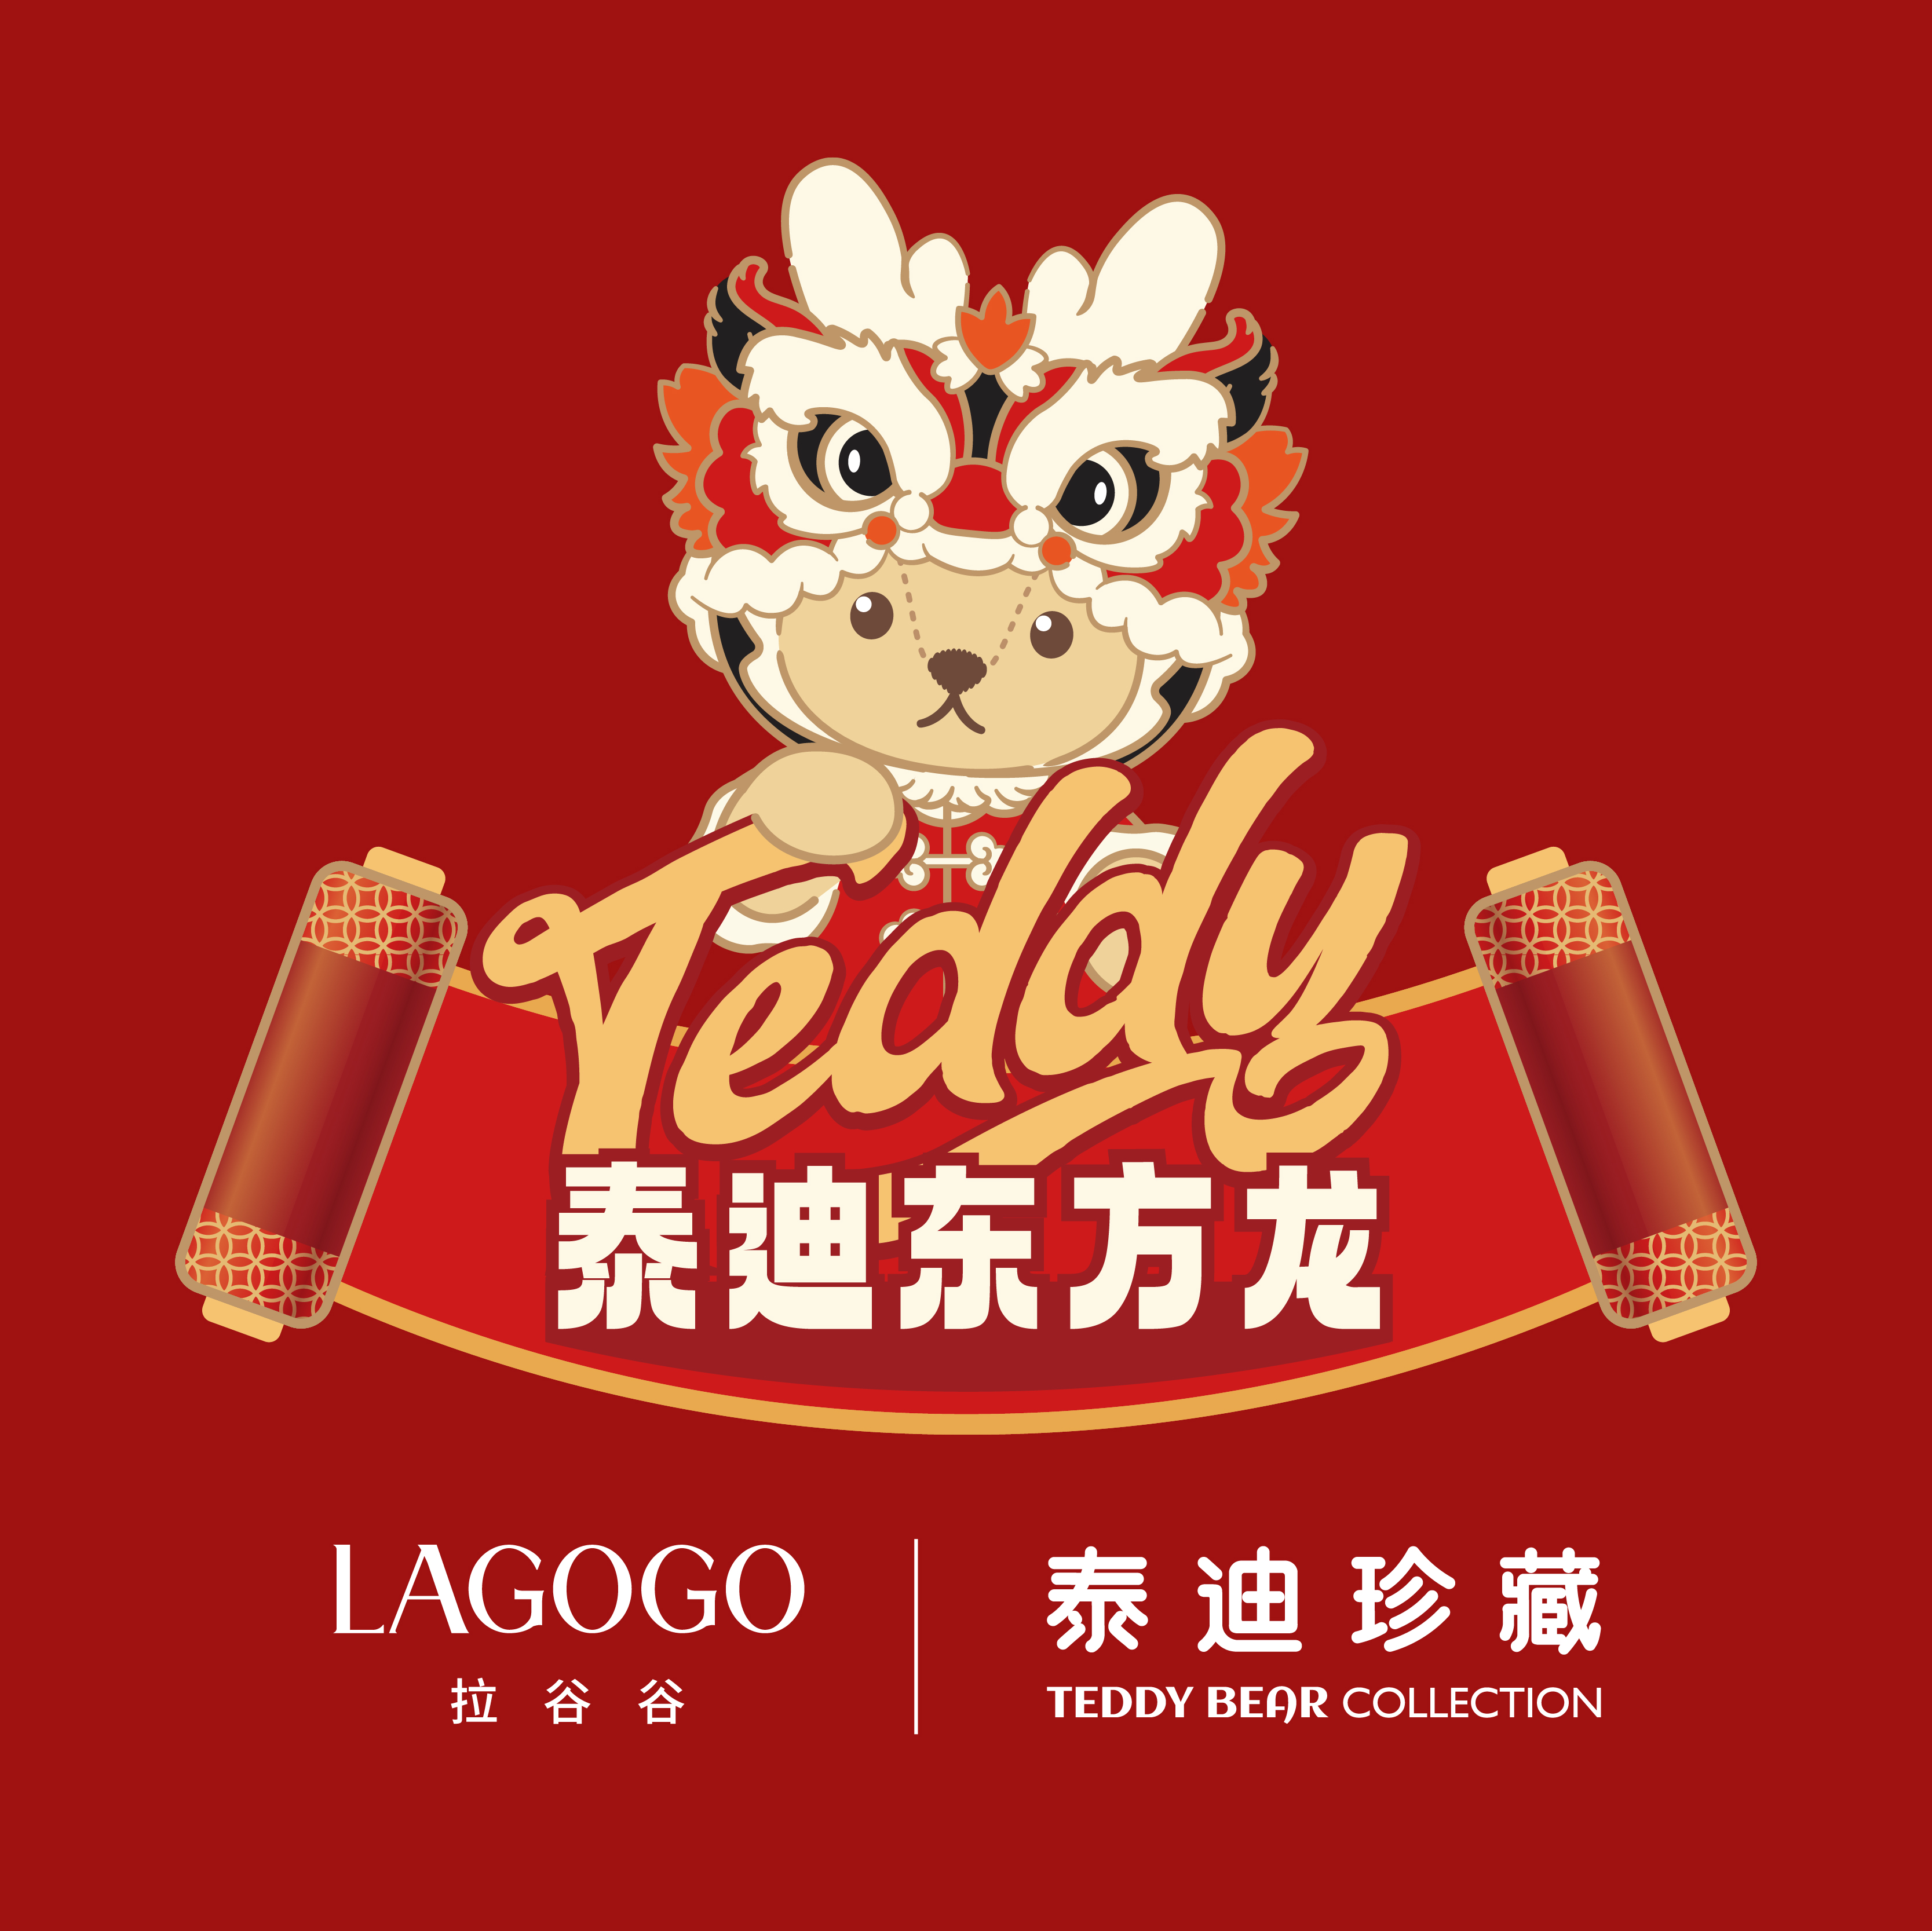 LAGOGO与泰迪珍藏携手推出联名「萌龙迎春」系列